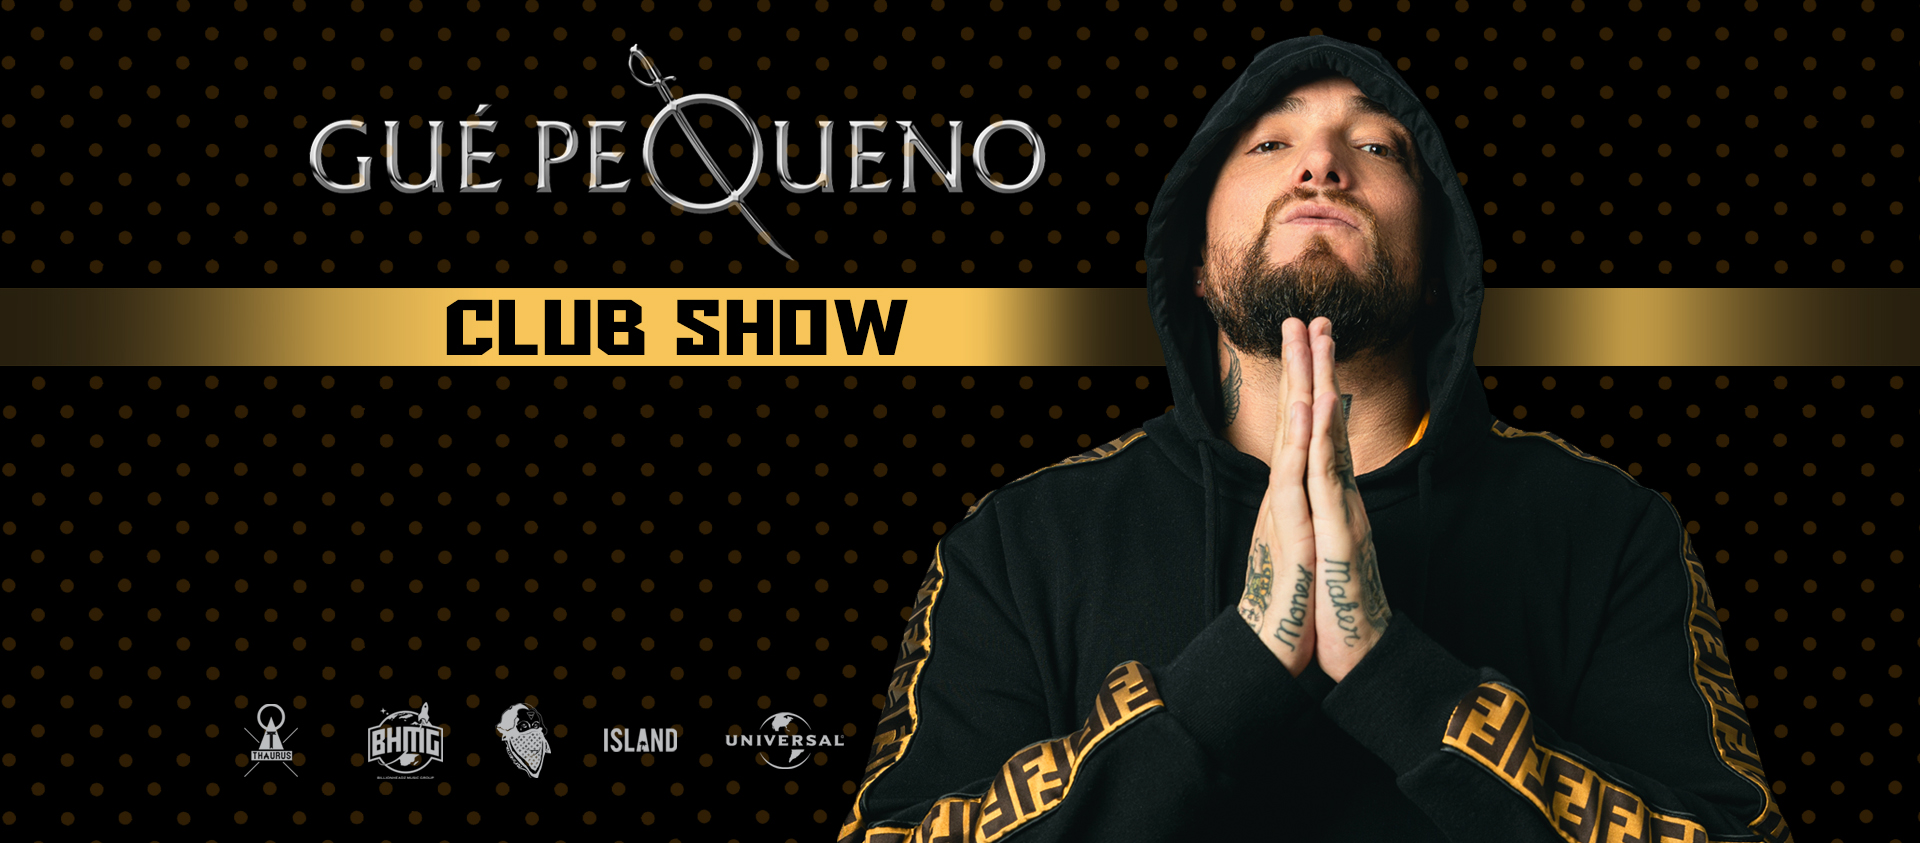 GUE PEQUENO – CLUB SHOW 2019/20